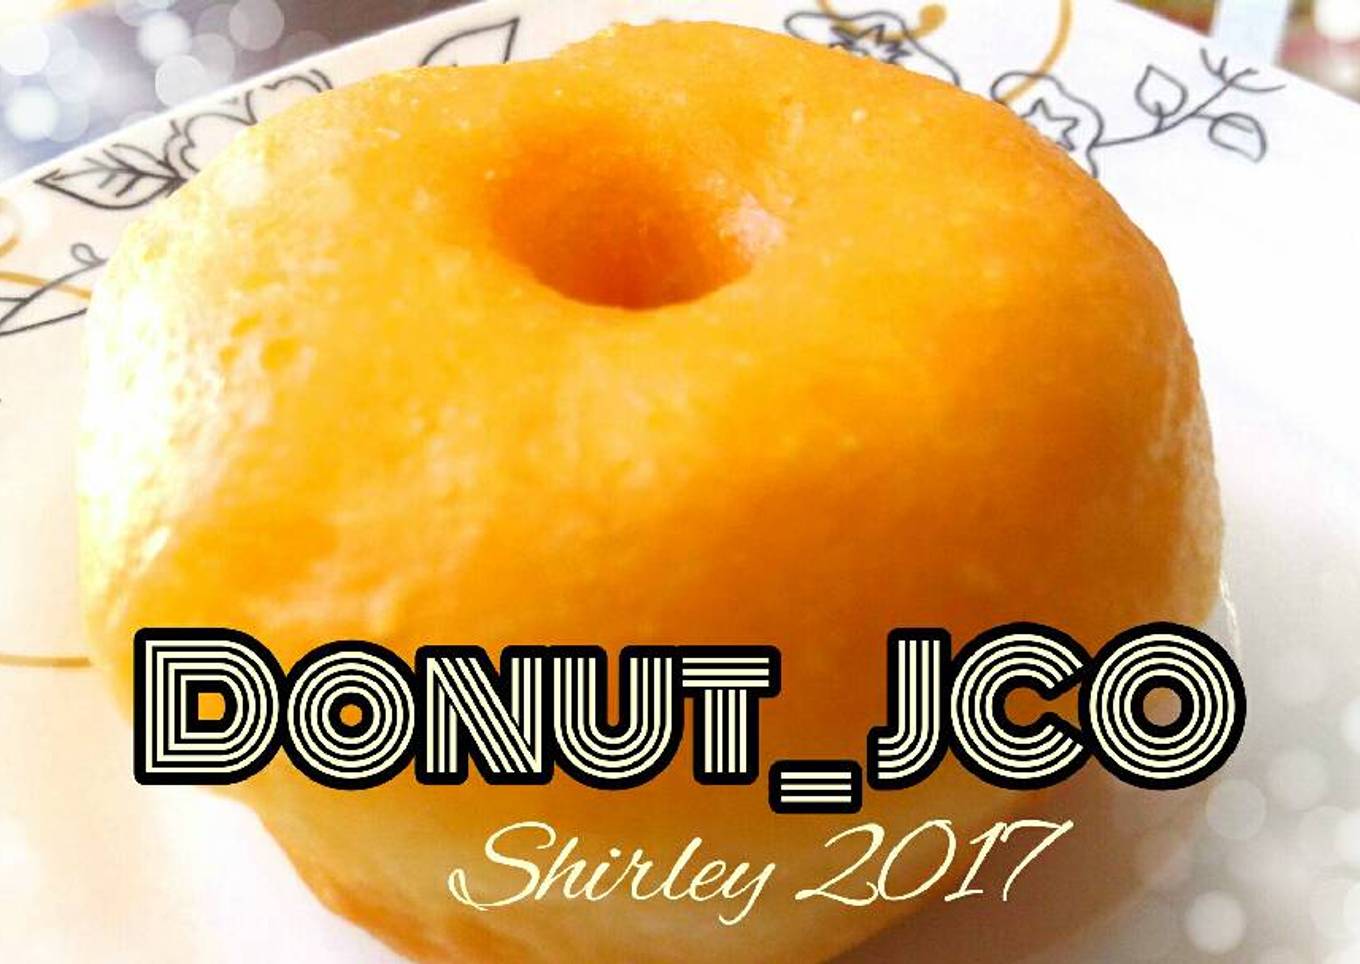 Donut kentang🍩 _ala JCO